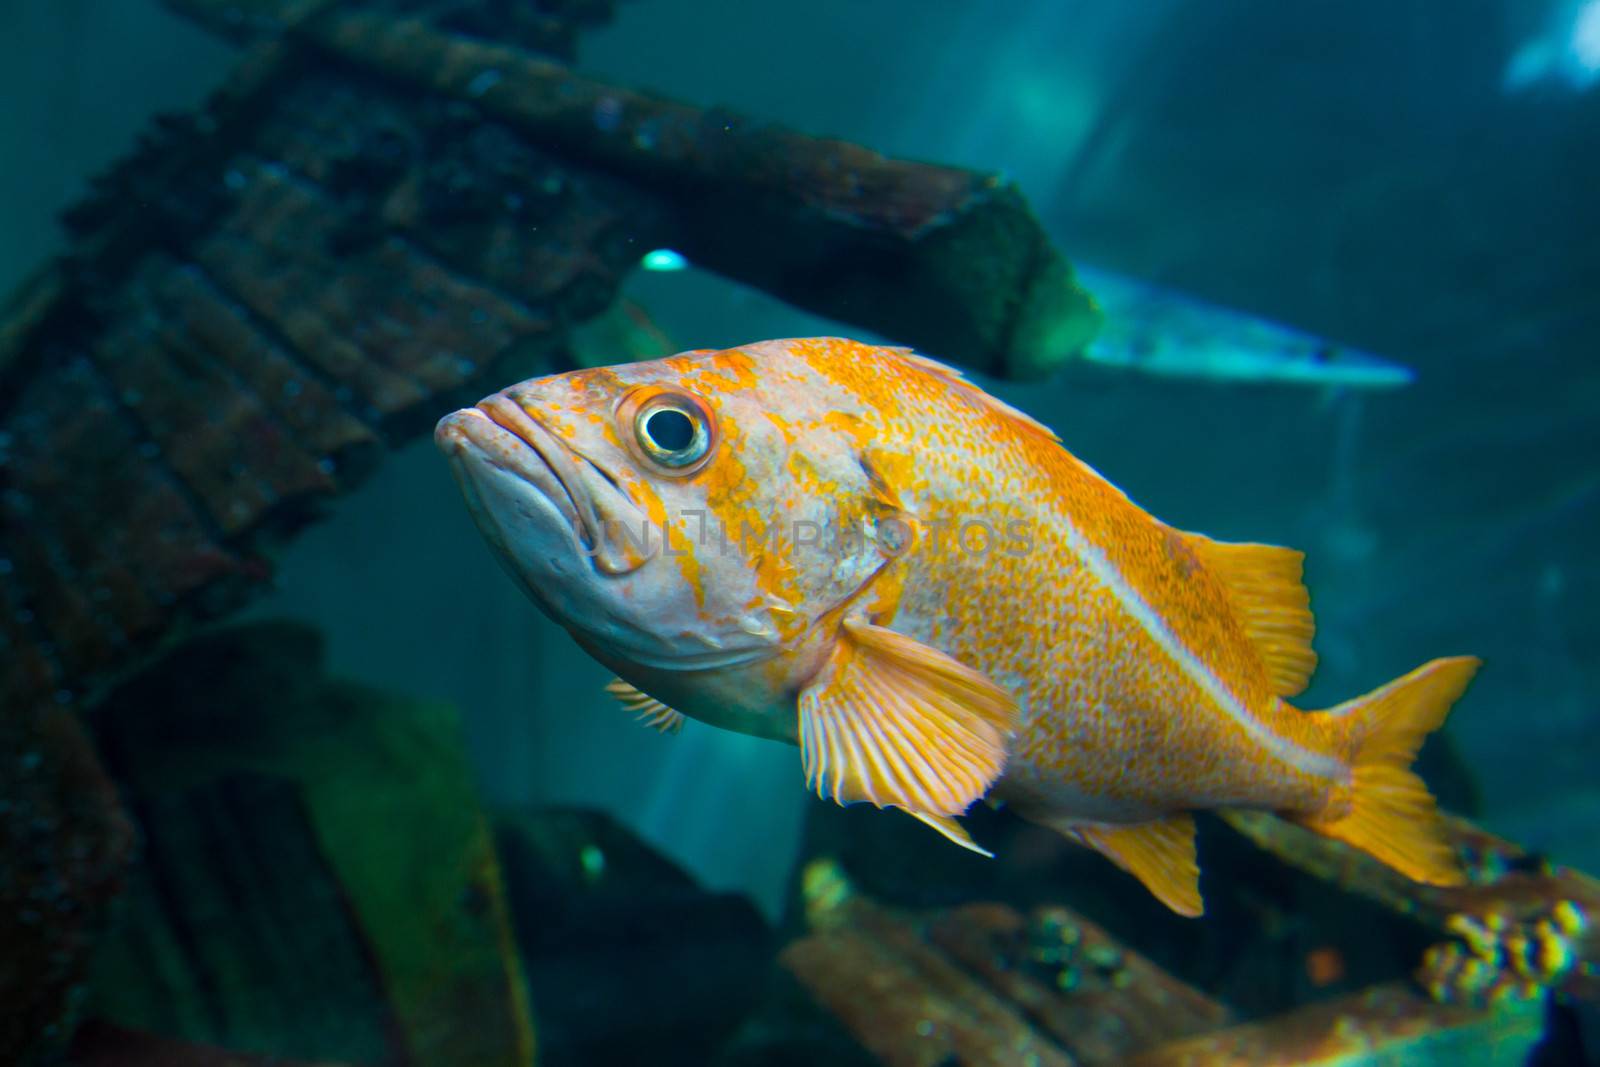 A fish swims near the glass at an aquarium tank at a zoo.